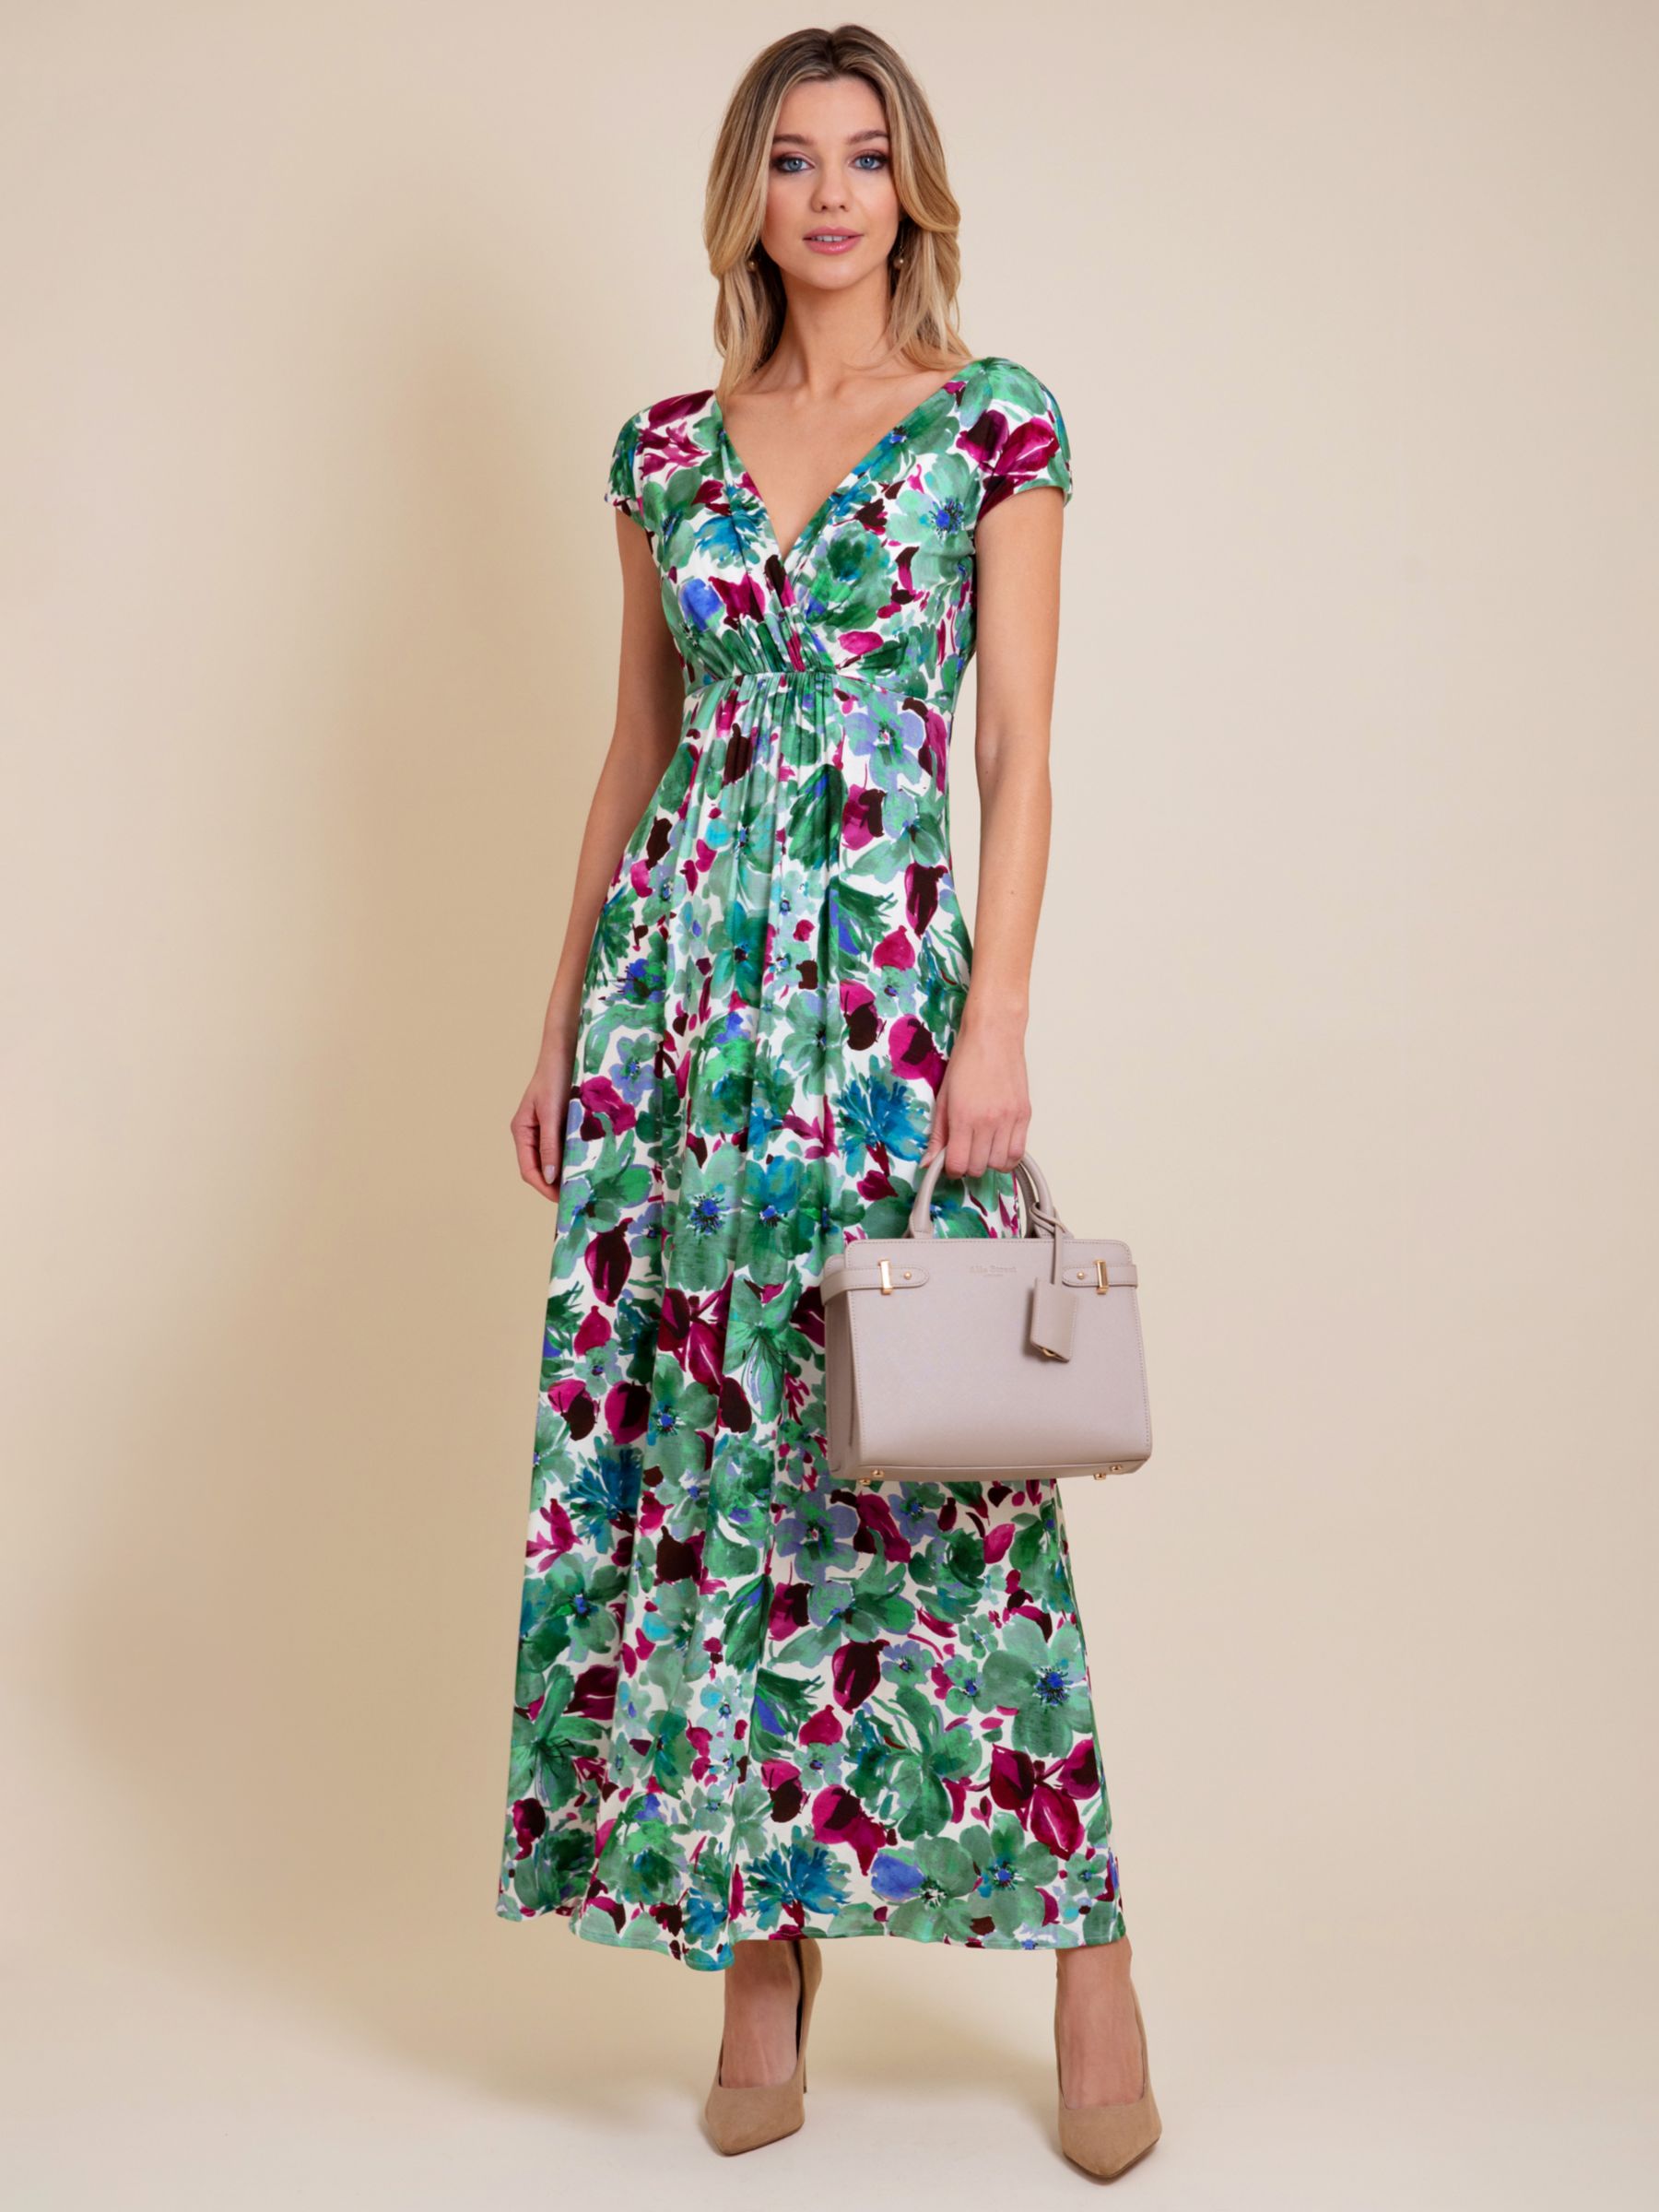 Alie Street Sophia Floral Maxi Dress, Multi, 18-20